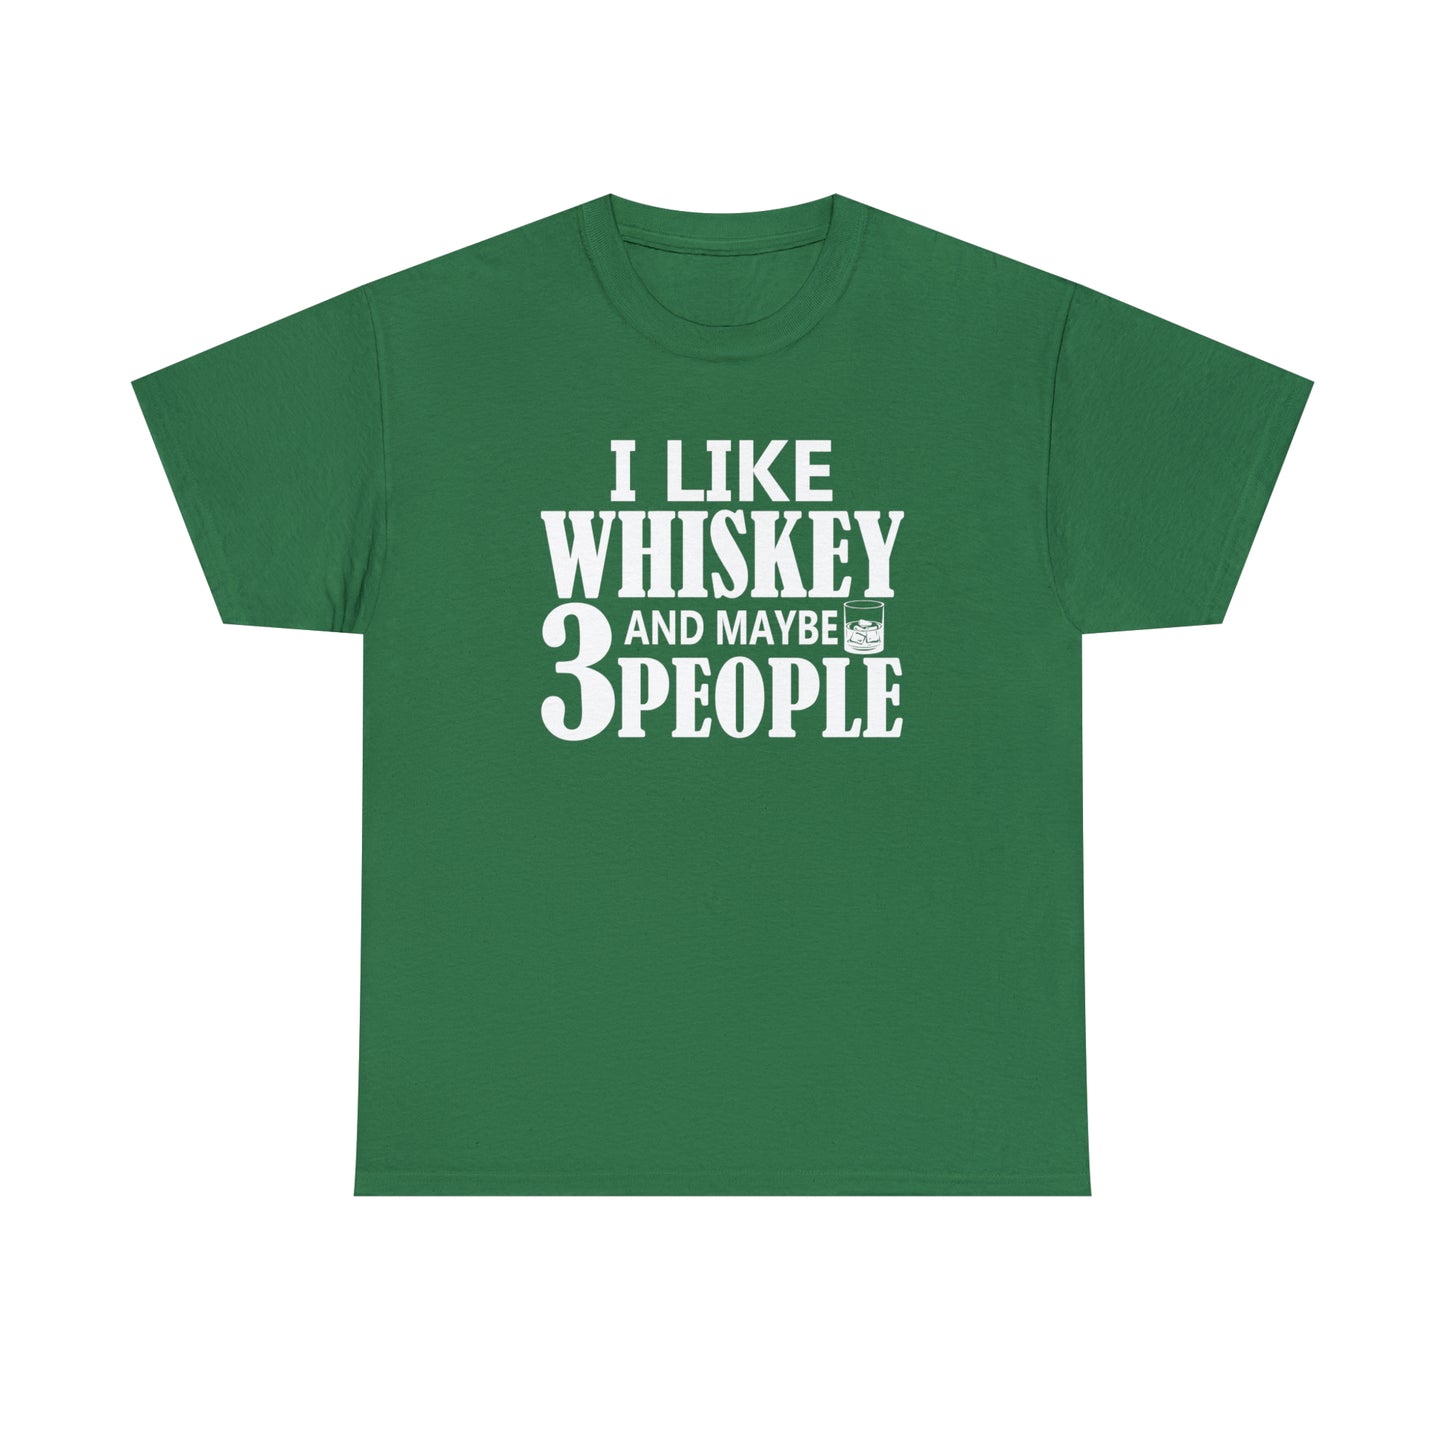 Unisex "I Like Whiskey & Like 3 People" t-shirt, runs true to size.